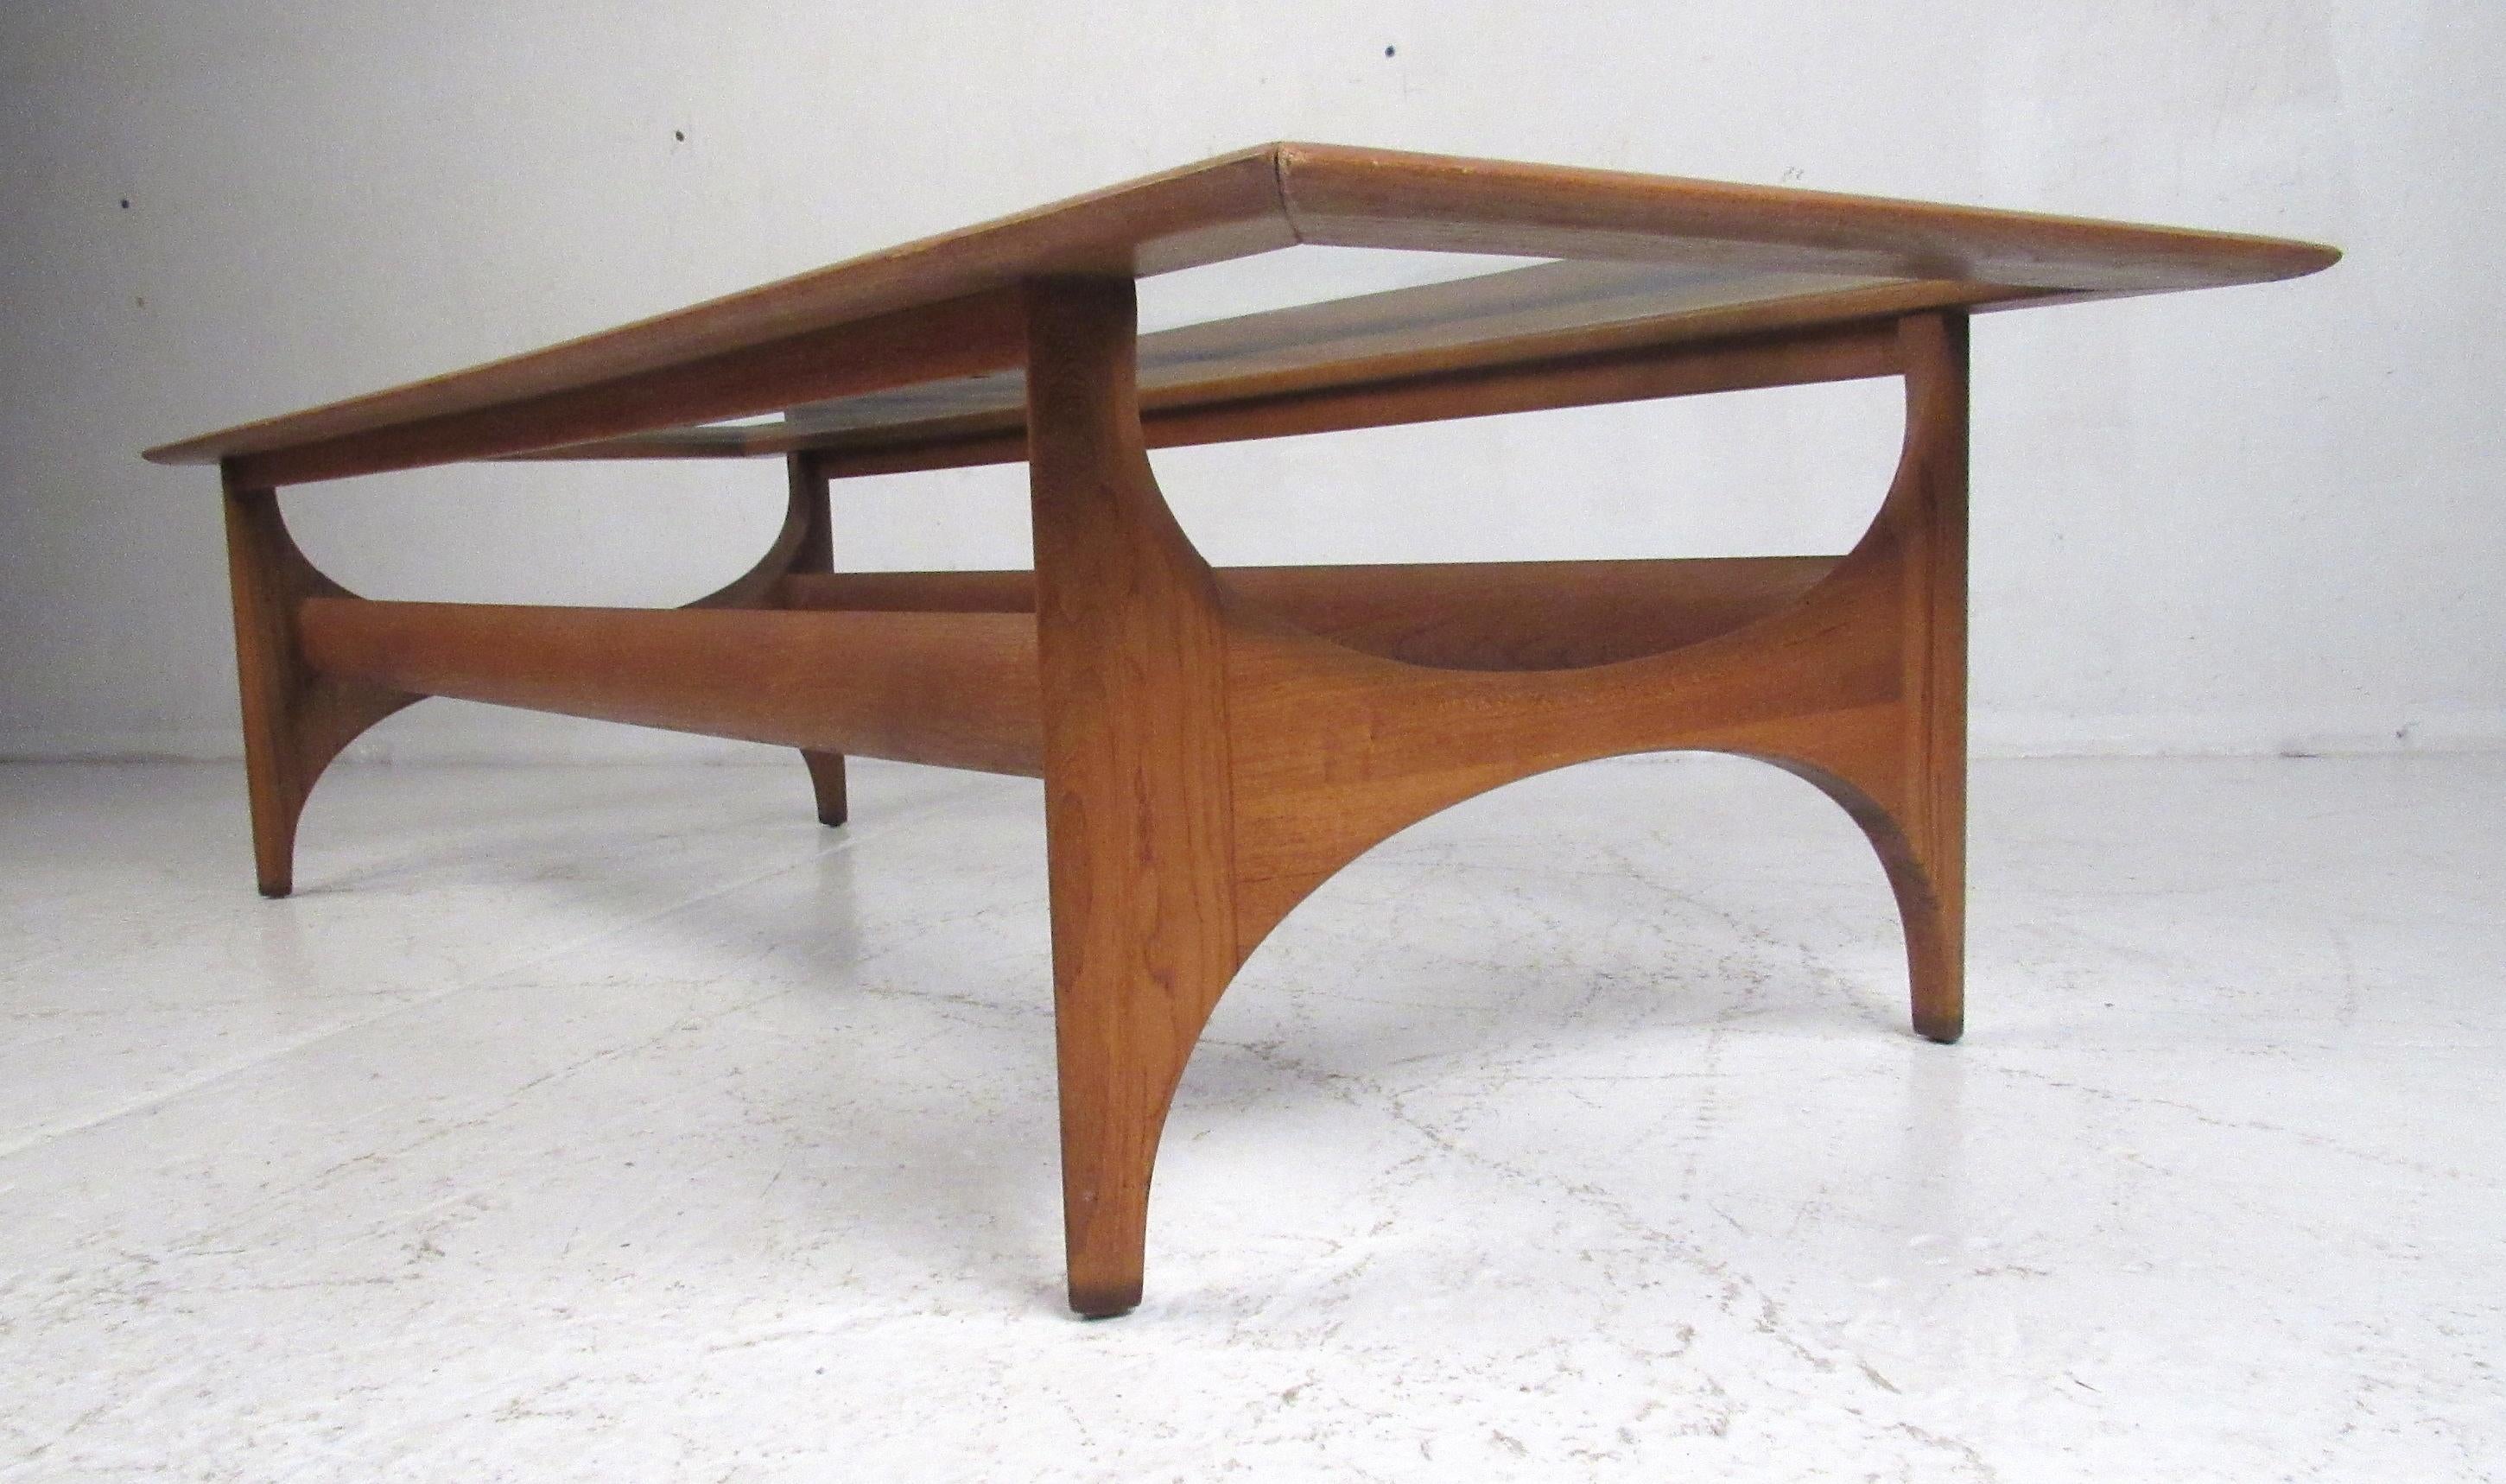 Magnifique table basse en noyer du milieu du siècle dernier, fabriquée par les meubles Lane's Altavista. Veuillez confirmer la localisation de l'article (NY ou NJ) auprès du revendeur.